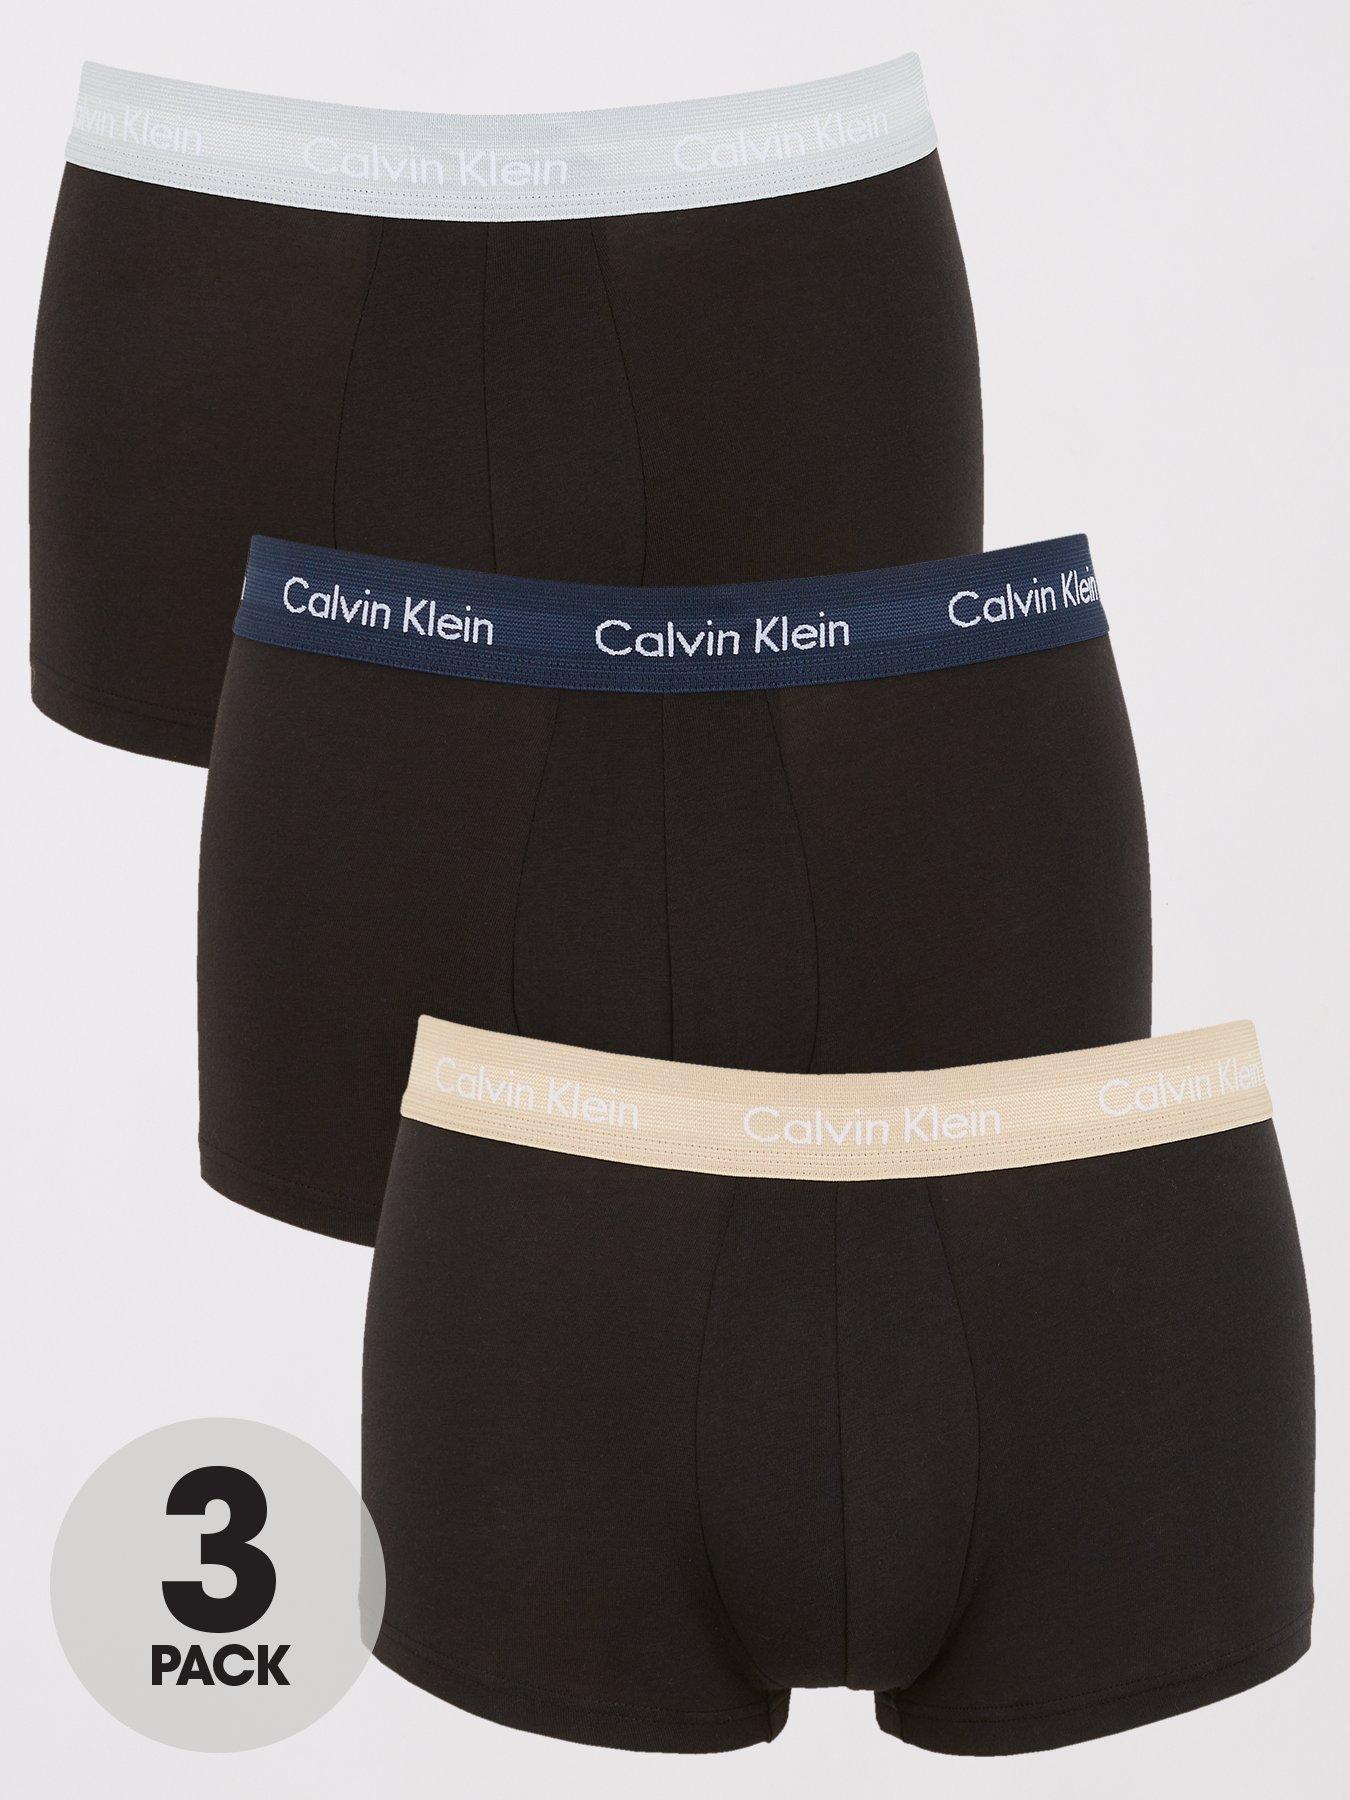 Sports Underwear Black for Men Cotton Underwear Mens Clothing Underwear Boxers briefs S Underwear Underwear Save 9% Calvin Klein Multipack Of 2 